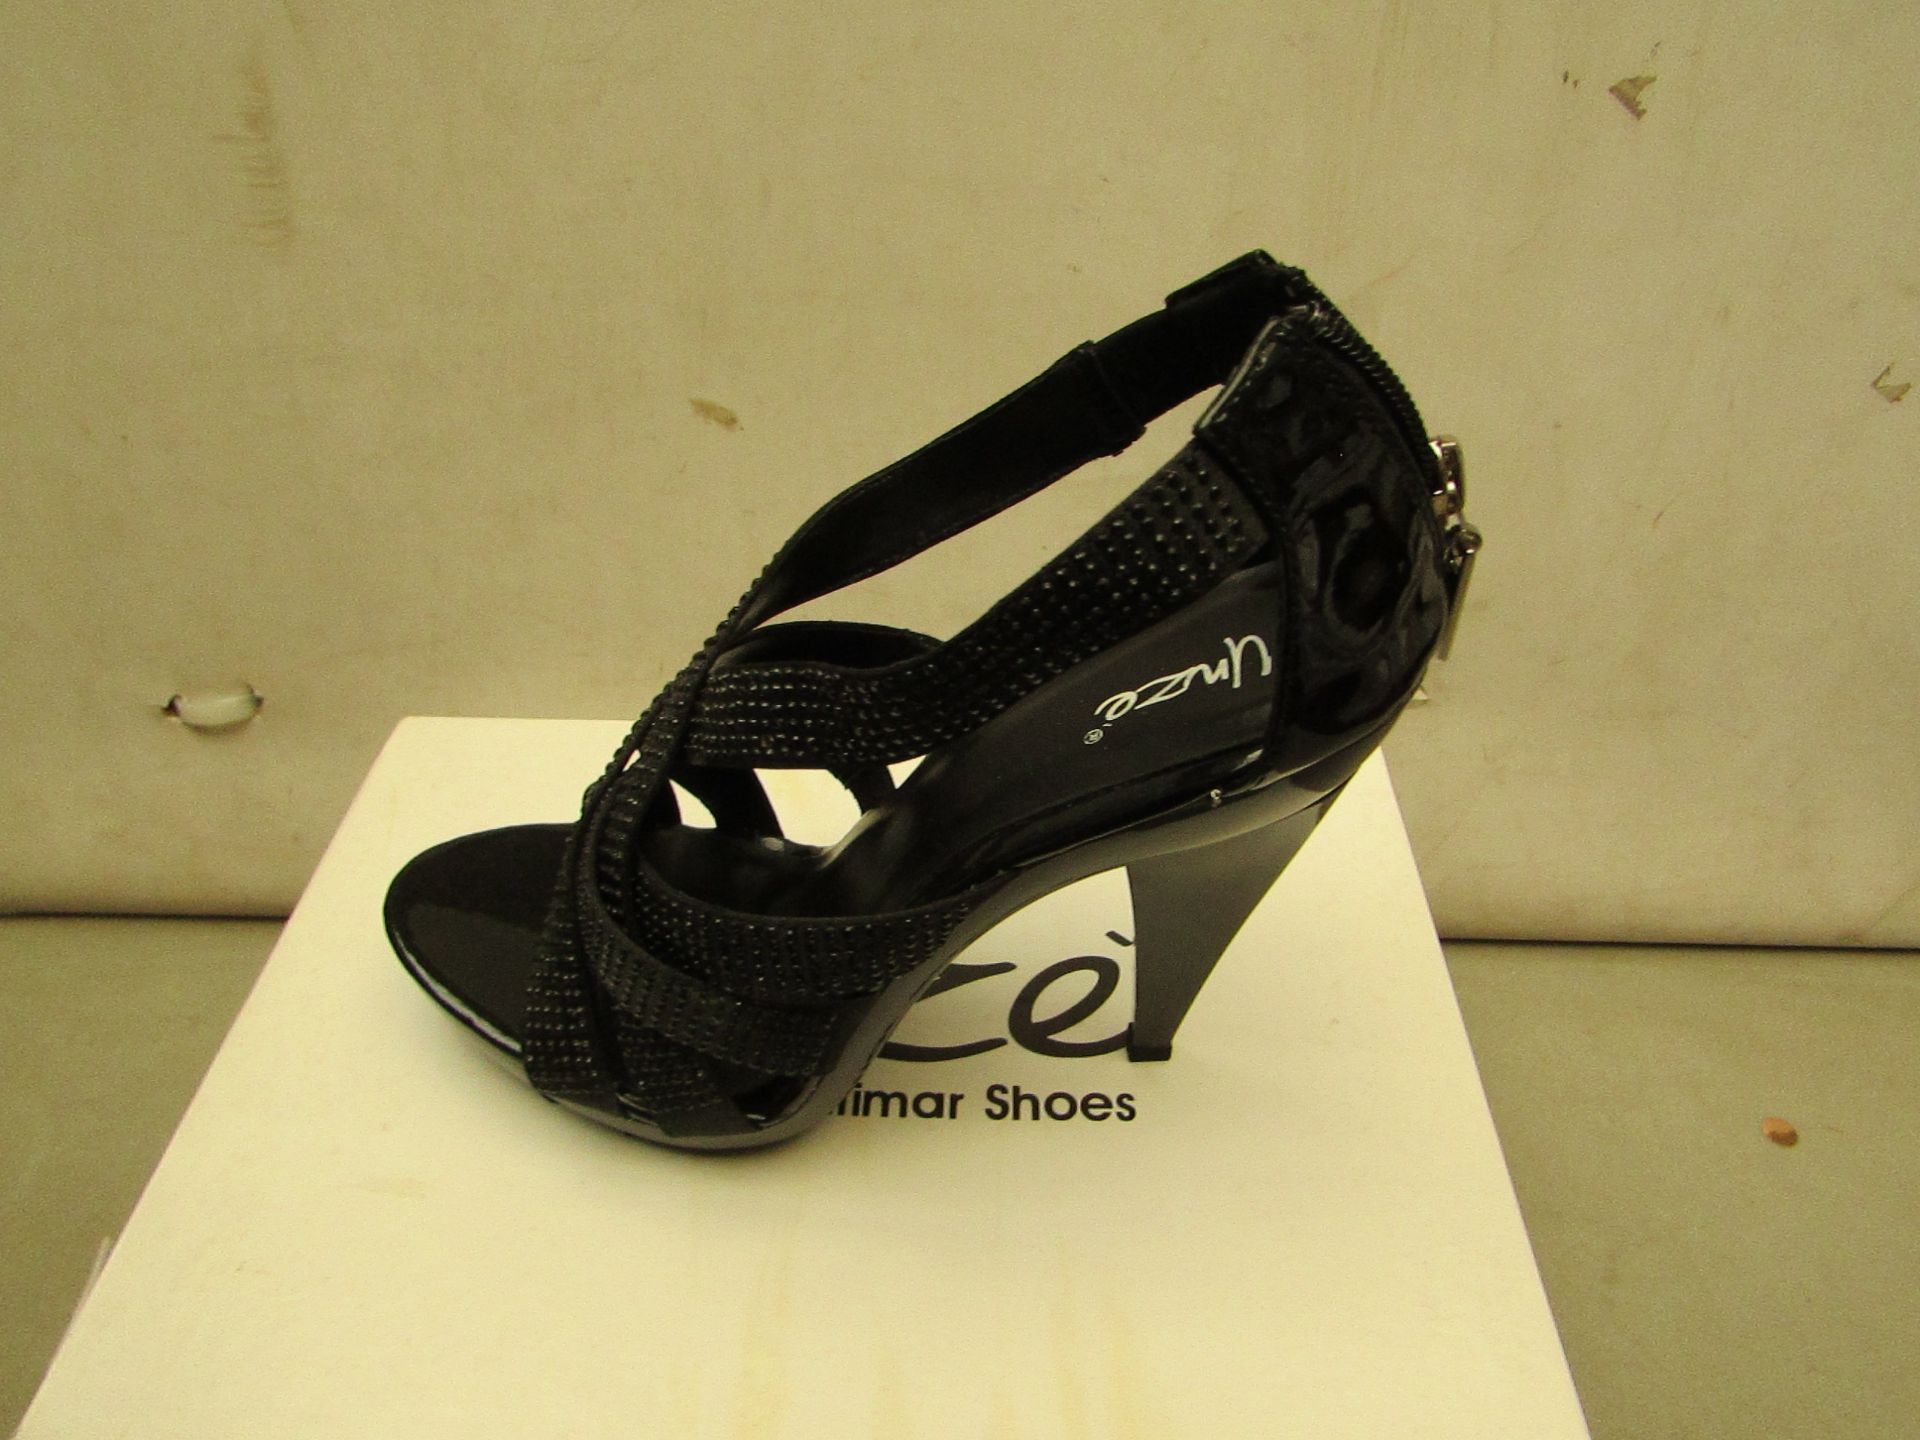 Unze London - Ladies Size 4 Shoes - See Image.